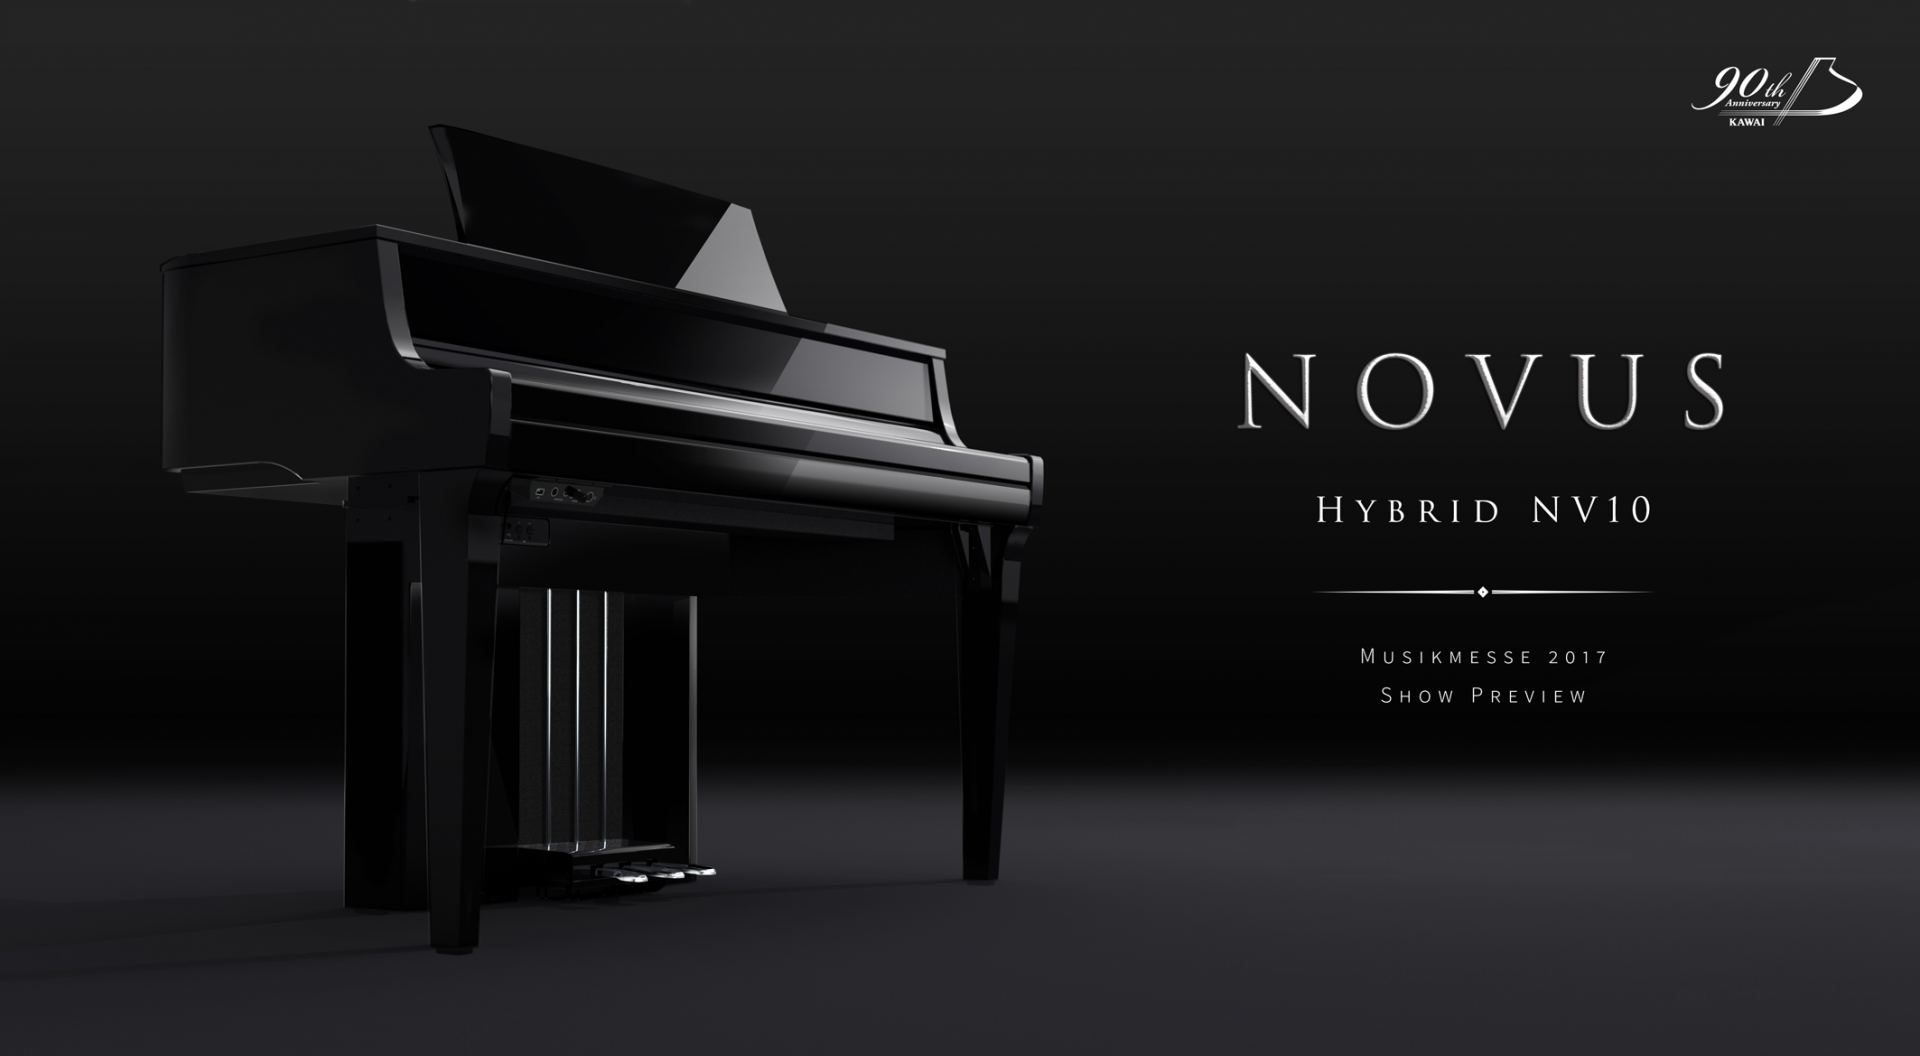 *KAWAIハイブリットデジタルピアノ『NOVUS NV10』店頭でお試しいただけます！ グランドピアノの音とタッチを求め、デジタルとアコースティックの技術を結集したカワイハイブリッドデジタルピアノです。ピアニストモード、オンキヨーテクノロジー、グランドピアノアクション、カワイが持てる最高の技術でグ […]